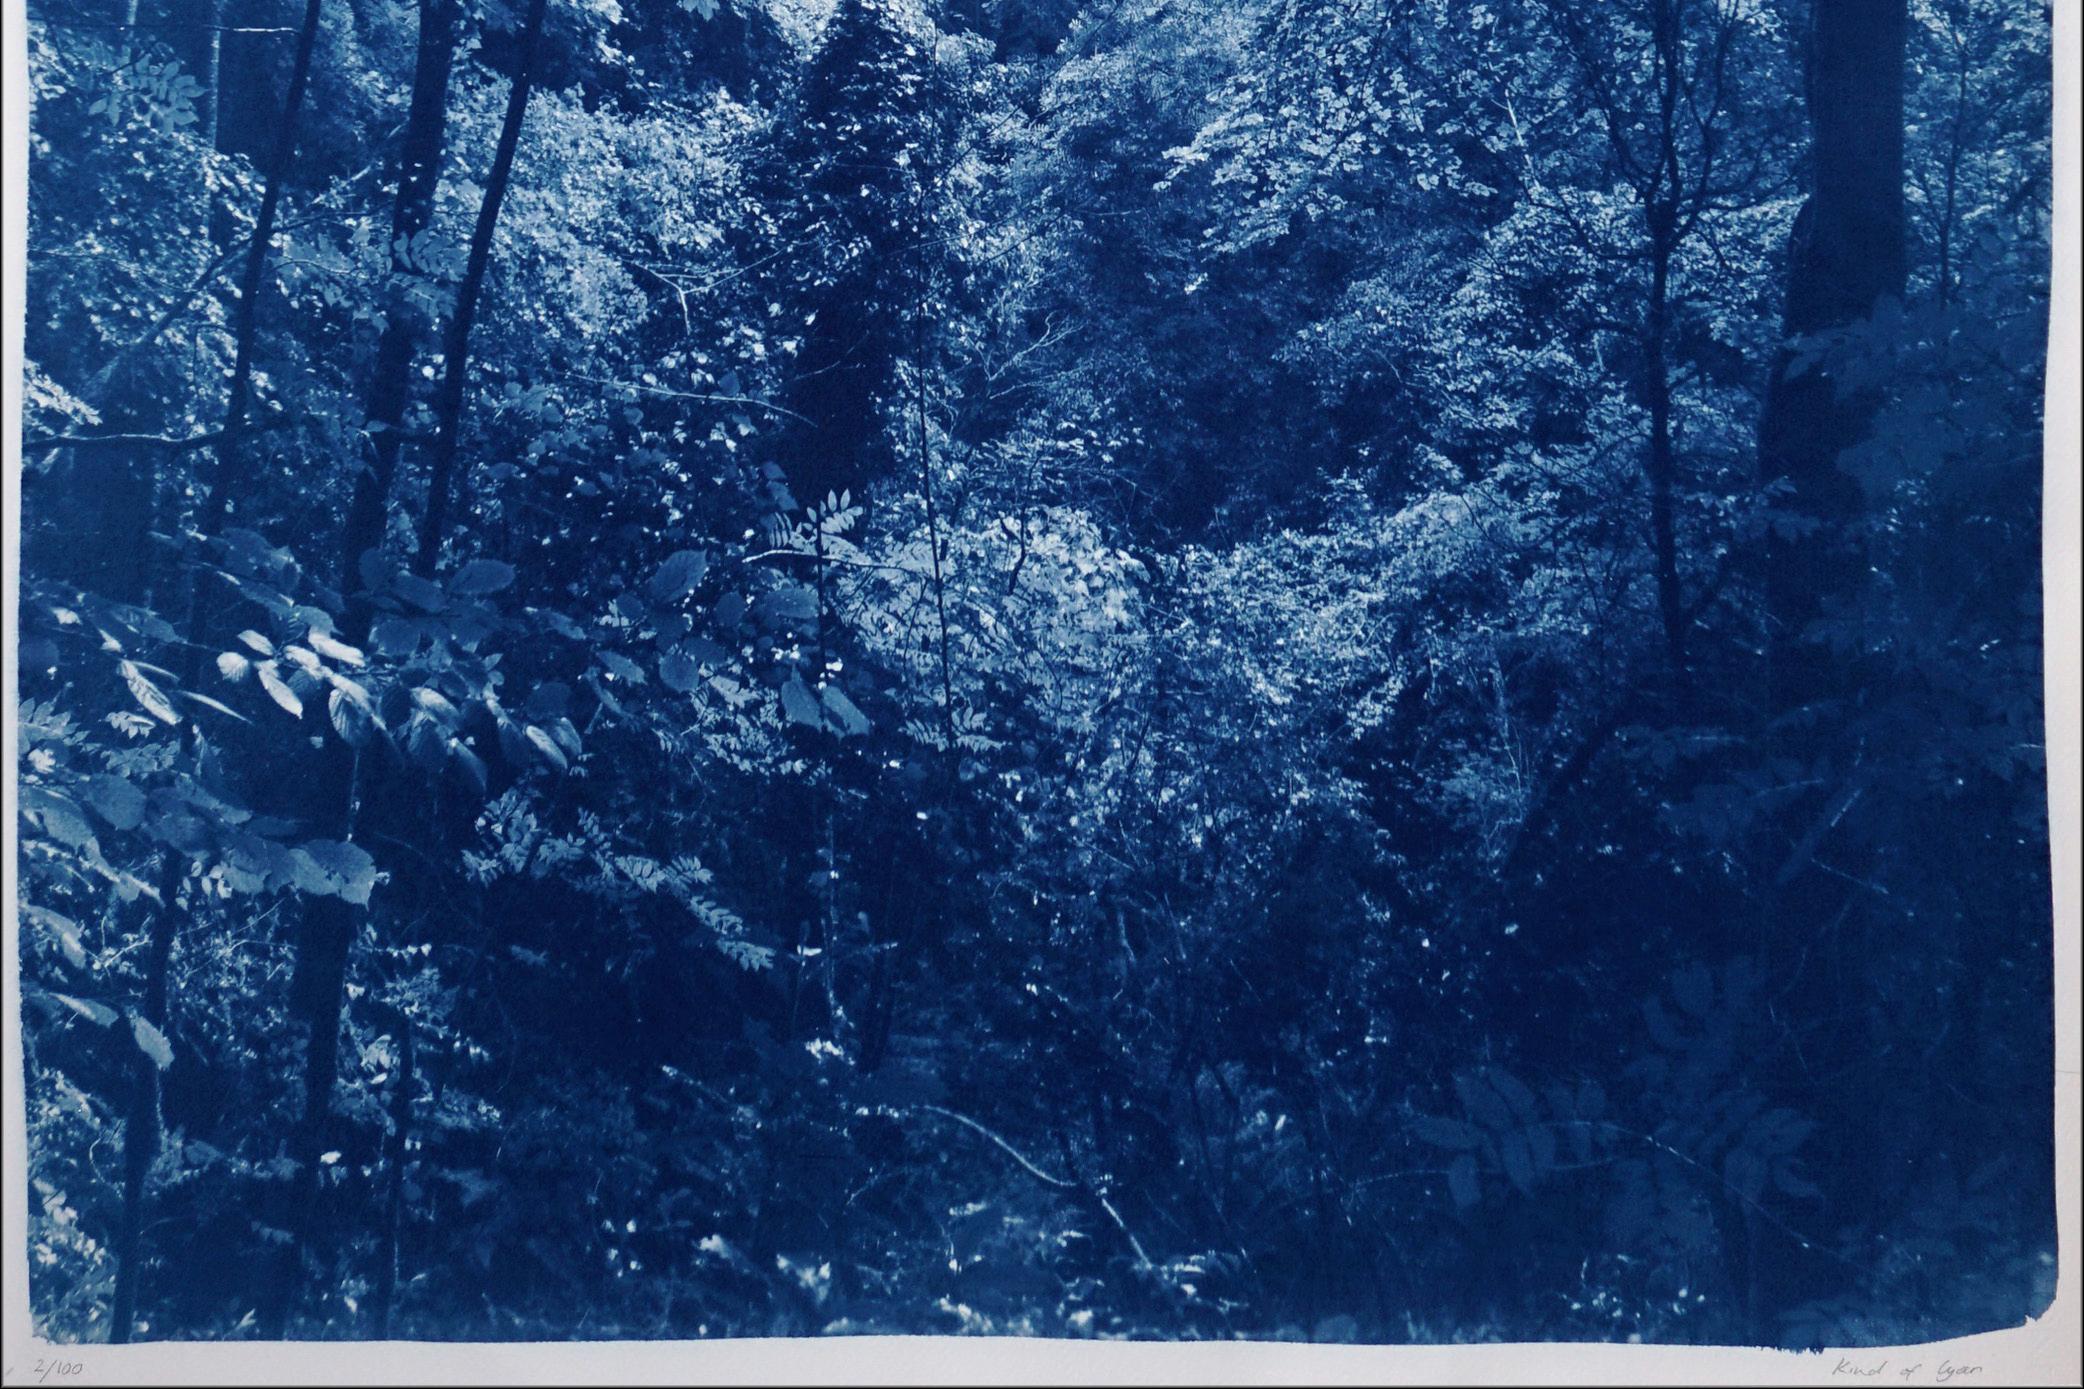 Dies ist eine exklusive handgedruckte limitierte Auflage eines Cyanotypie-Drucks.
Dieses schöne Bild zeigt das subtile Nachmittagslicht, das im Sommer durch den Wald fällt. 

Einzelheiten:
+ Titel: Weiches Licht in den Wäldern
+ Jahr: 2024
+